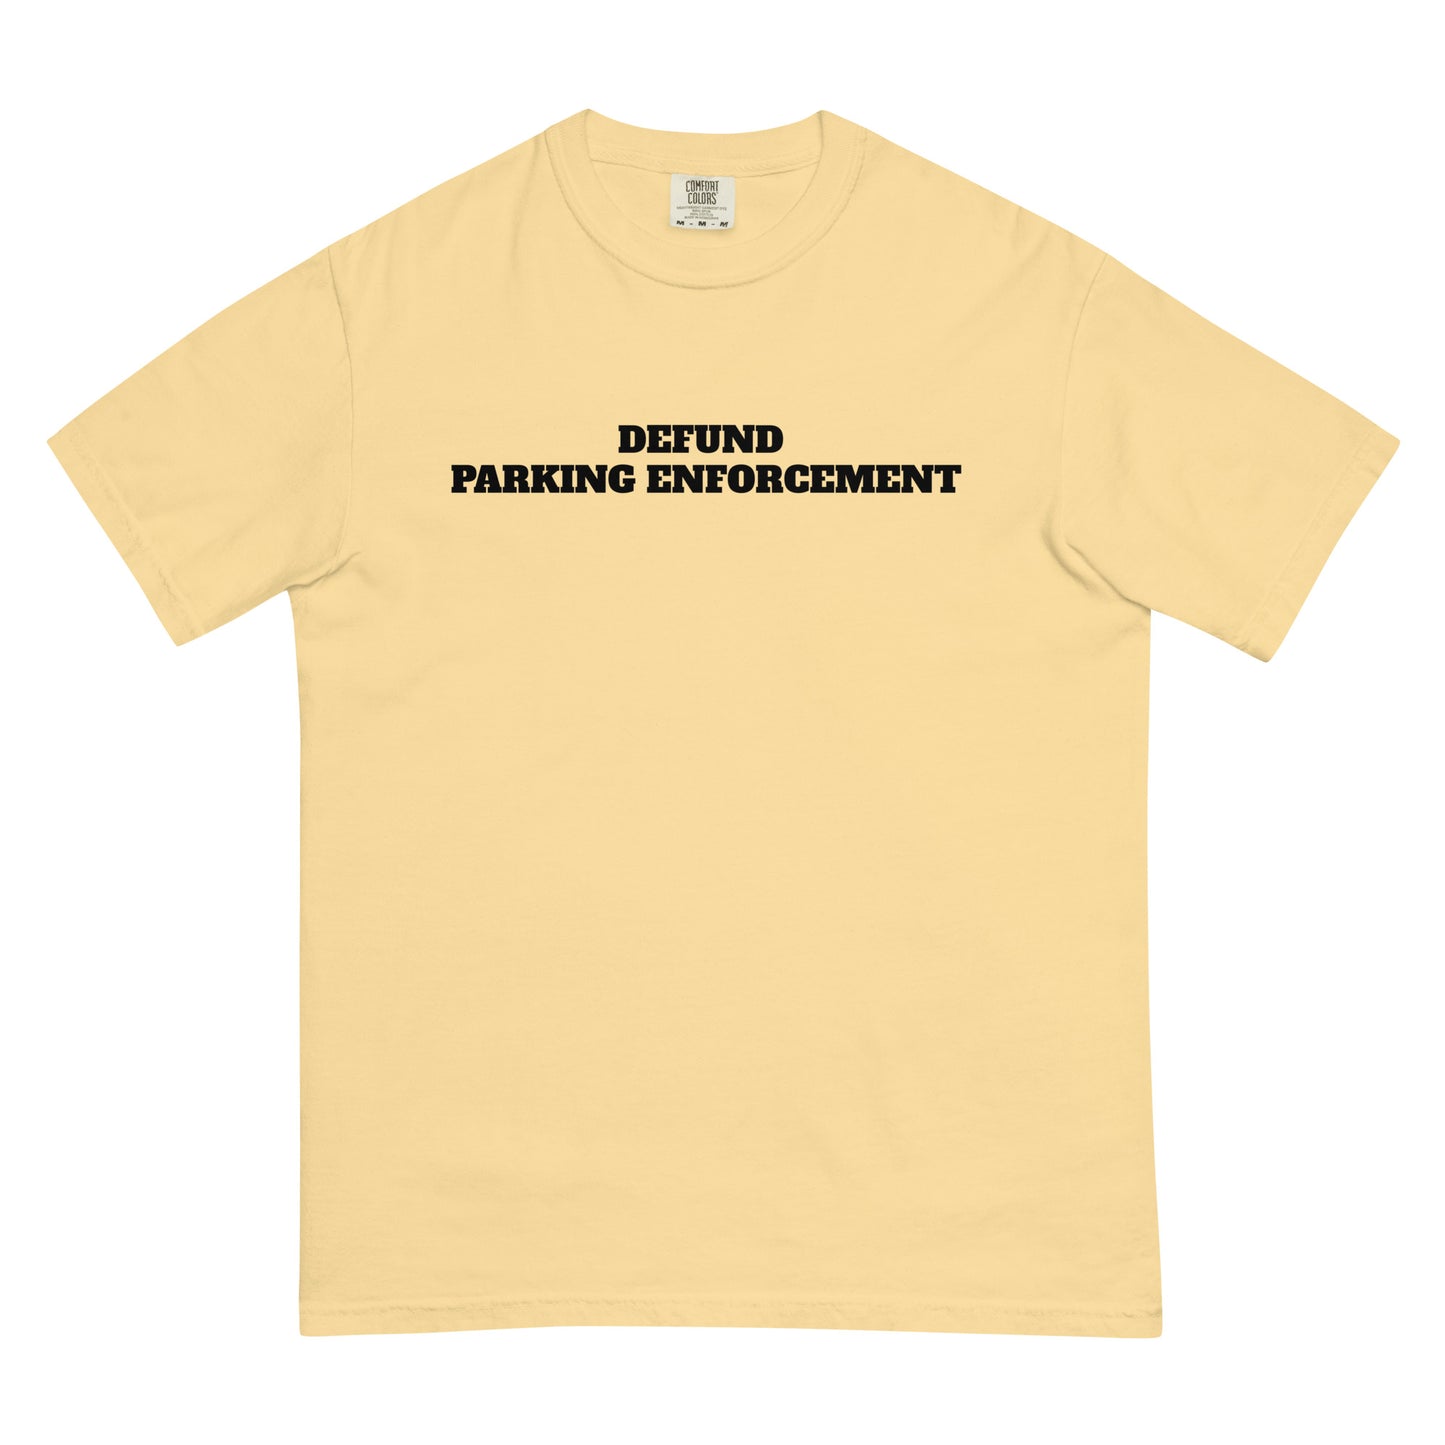 Defund Parking Enforcement Premium Tee